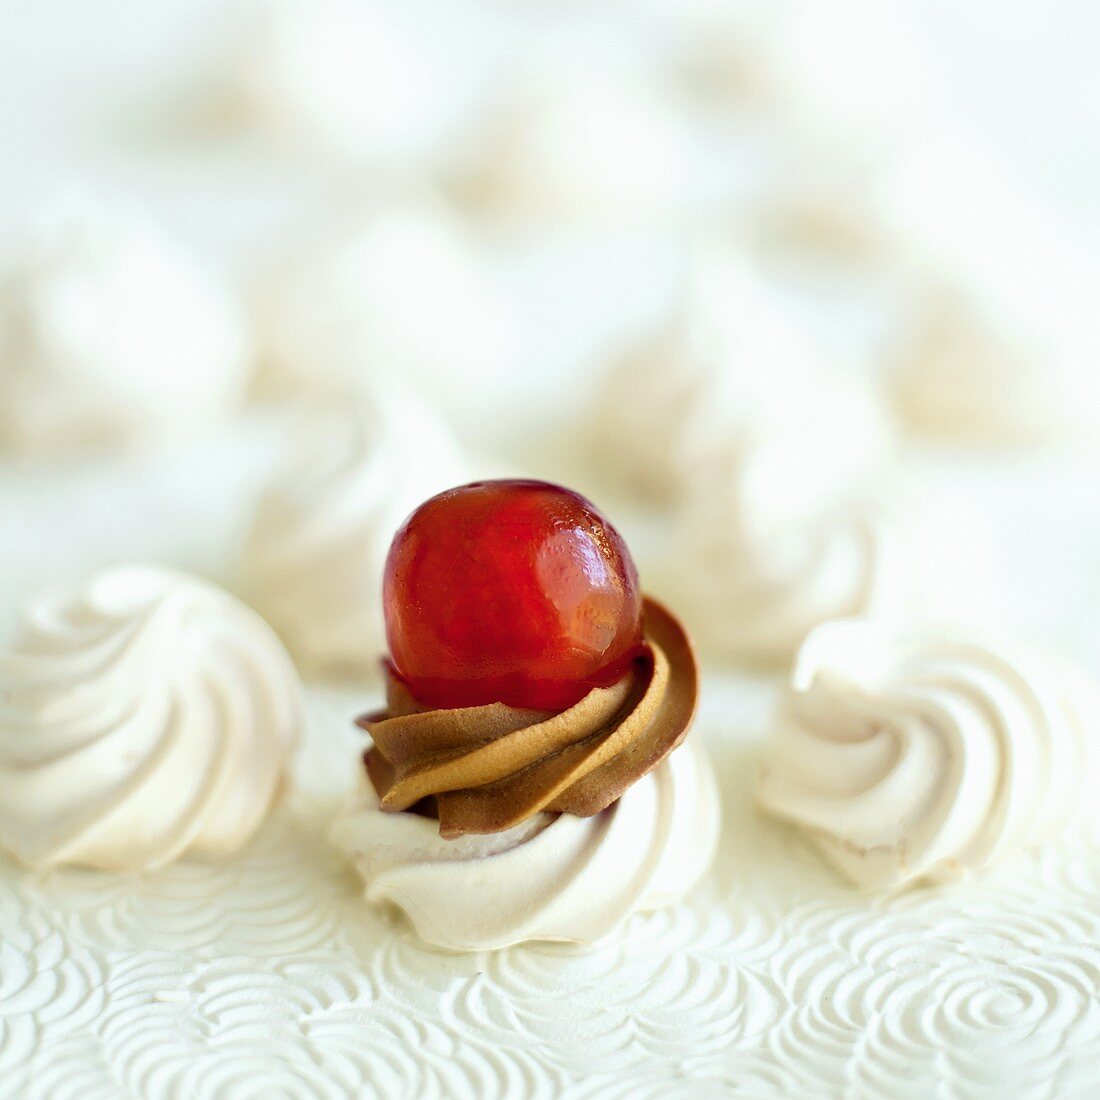 Meringue cake with cherry